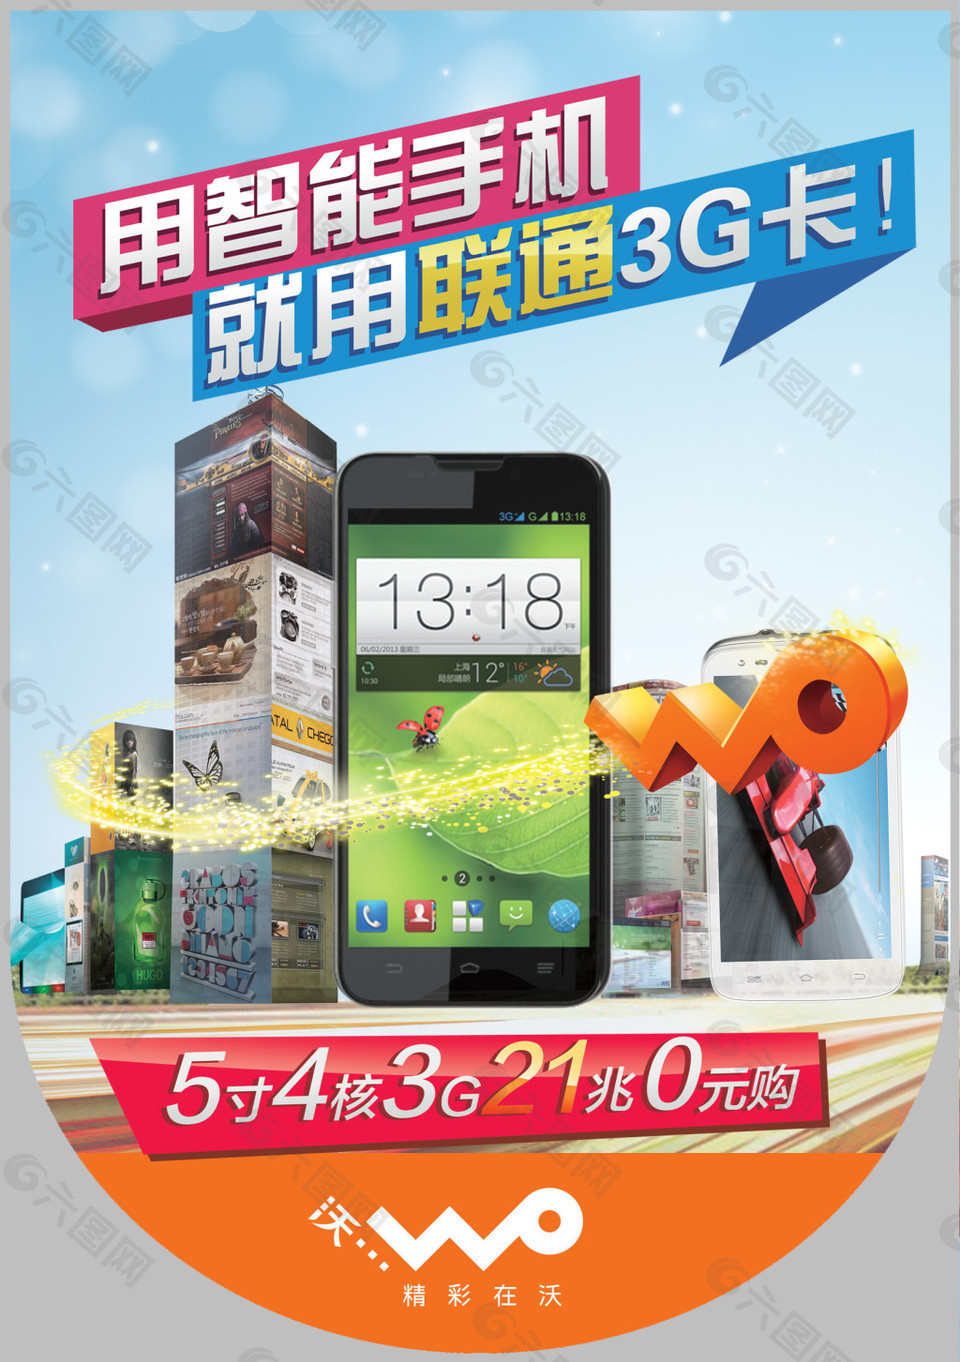 大屏多核高性能智能3G手机促销海报